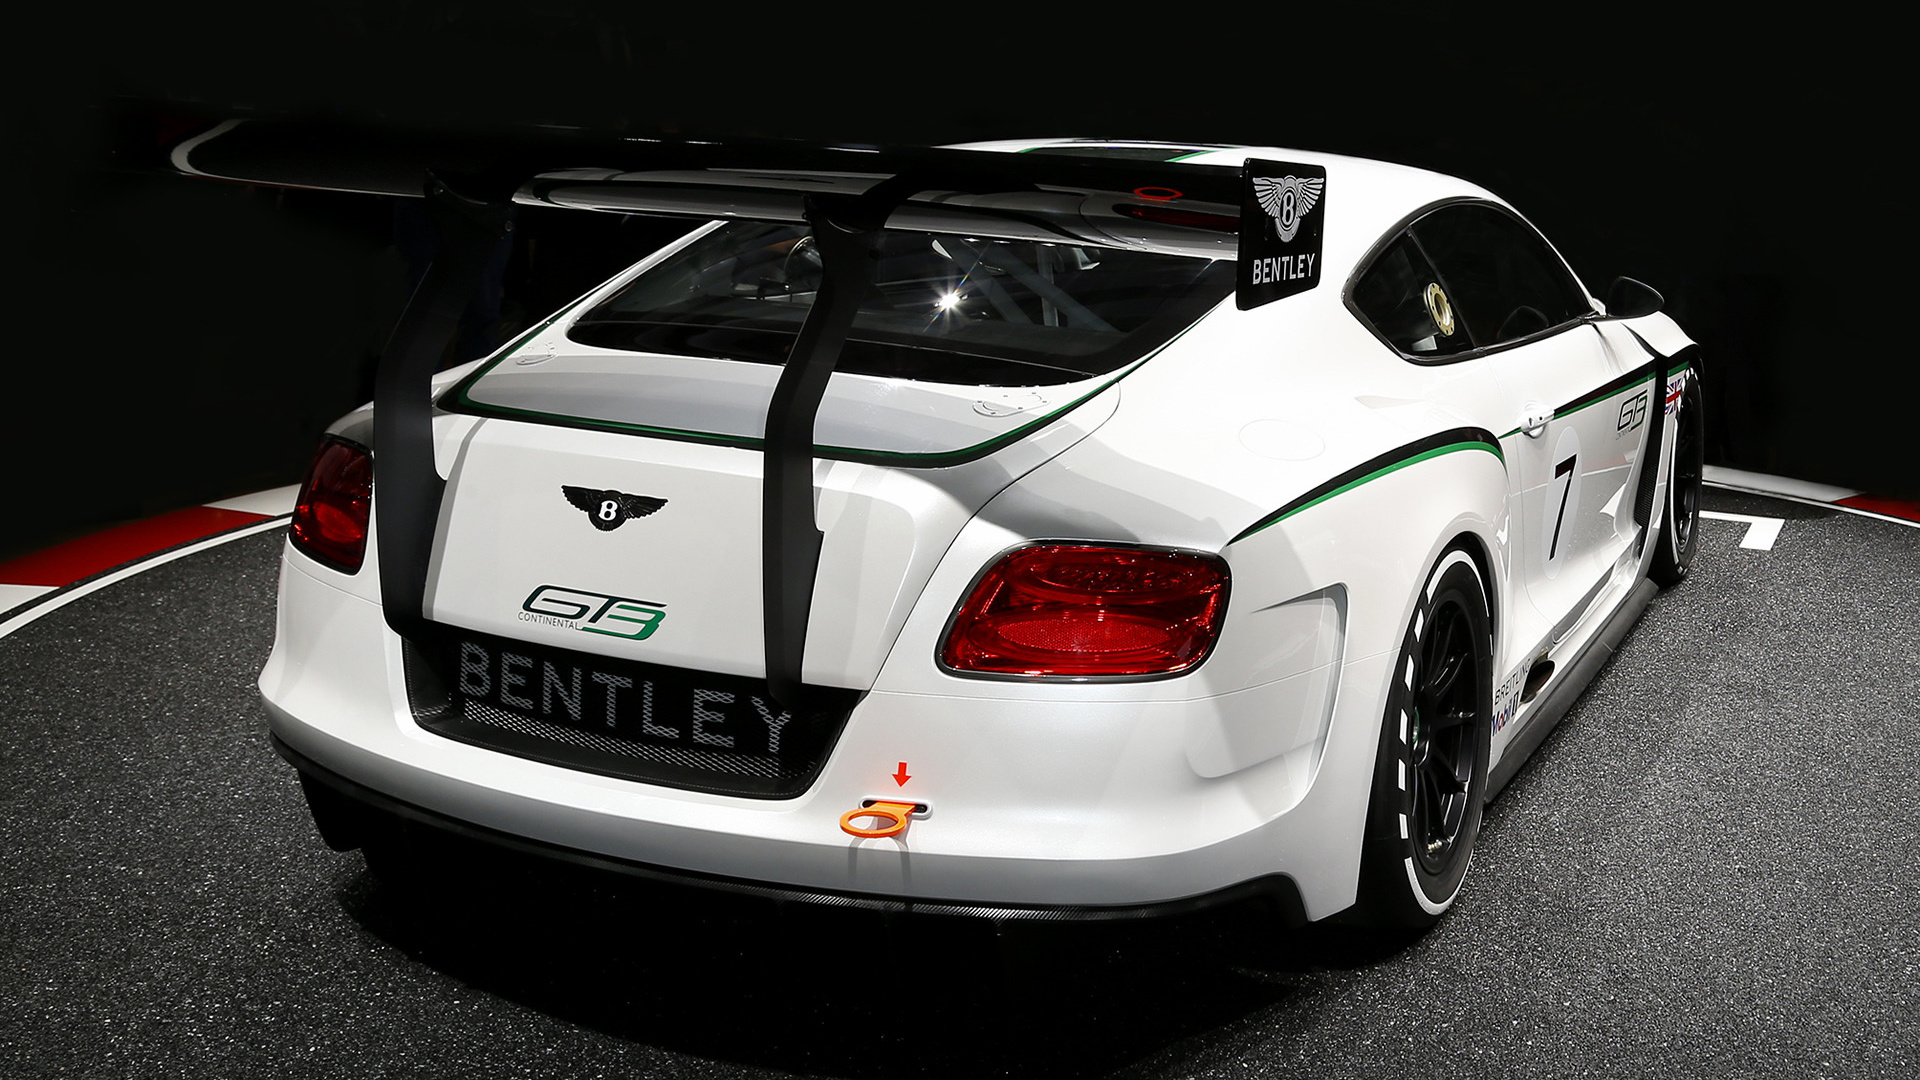 Скачать обои Концепт Bentley Continental Gt3 на телефон бесплатно